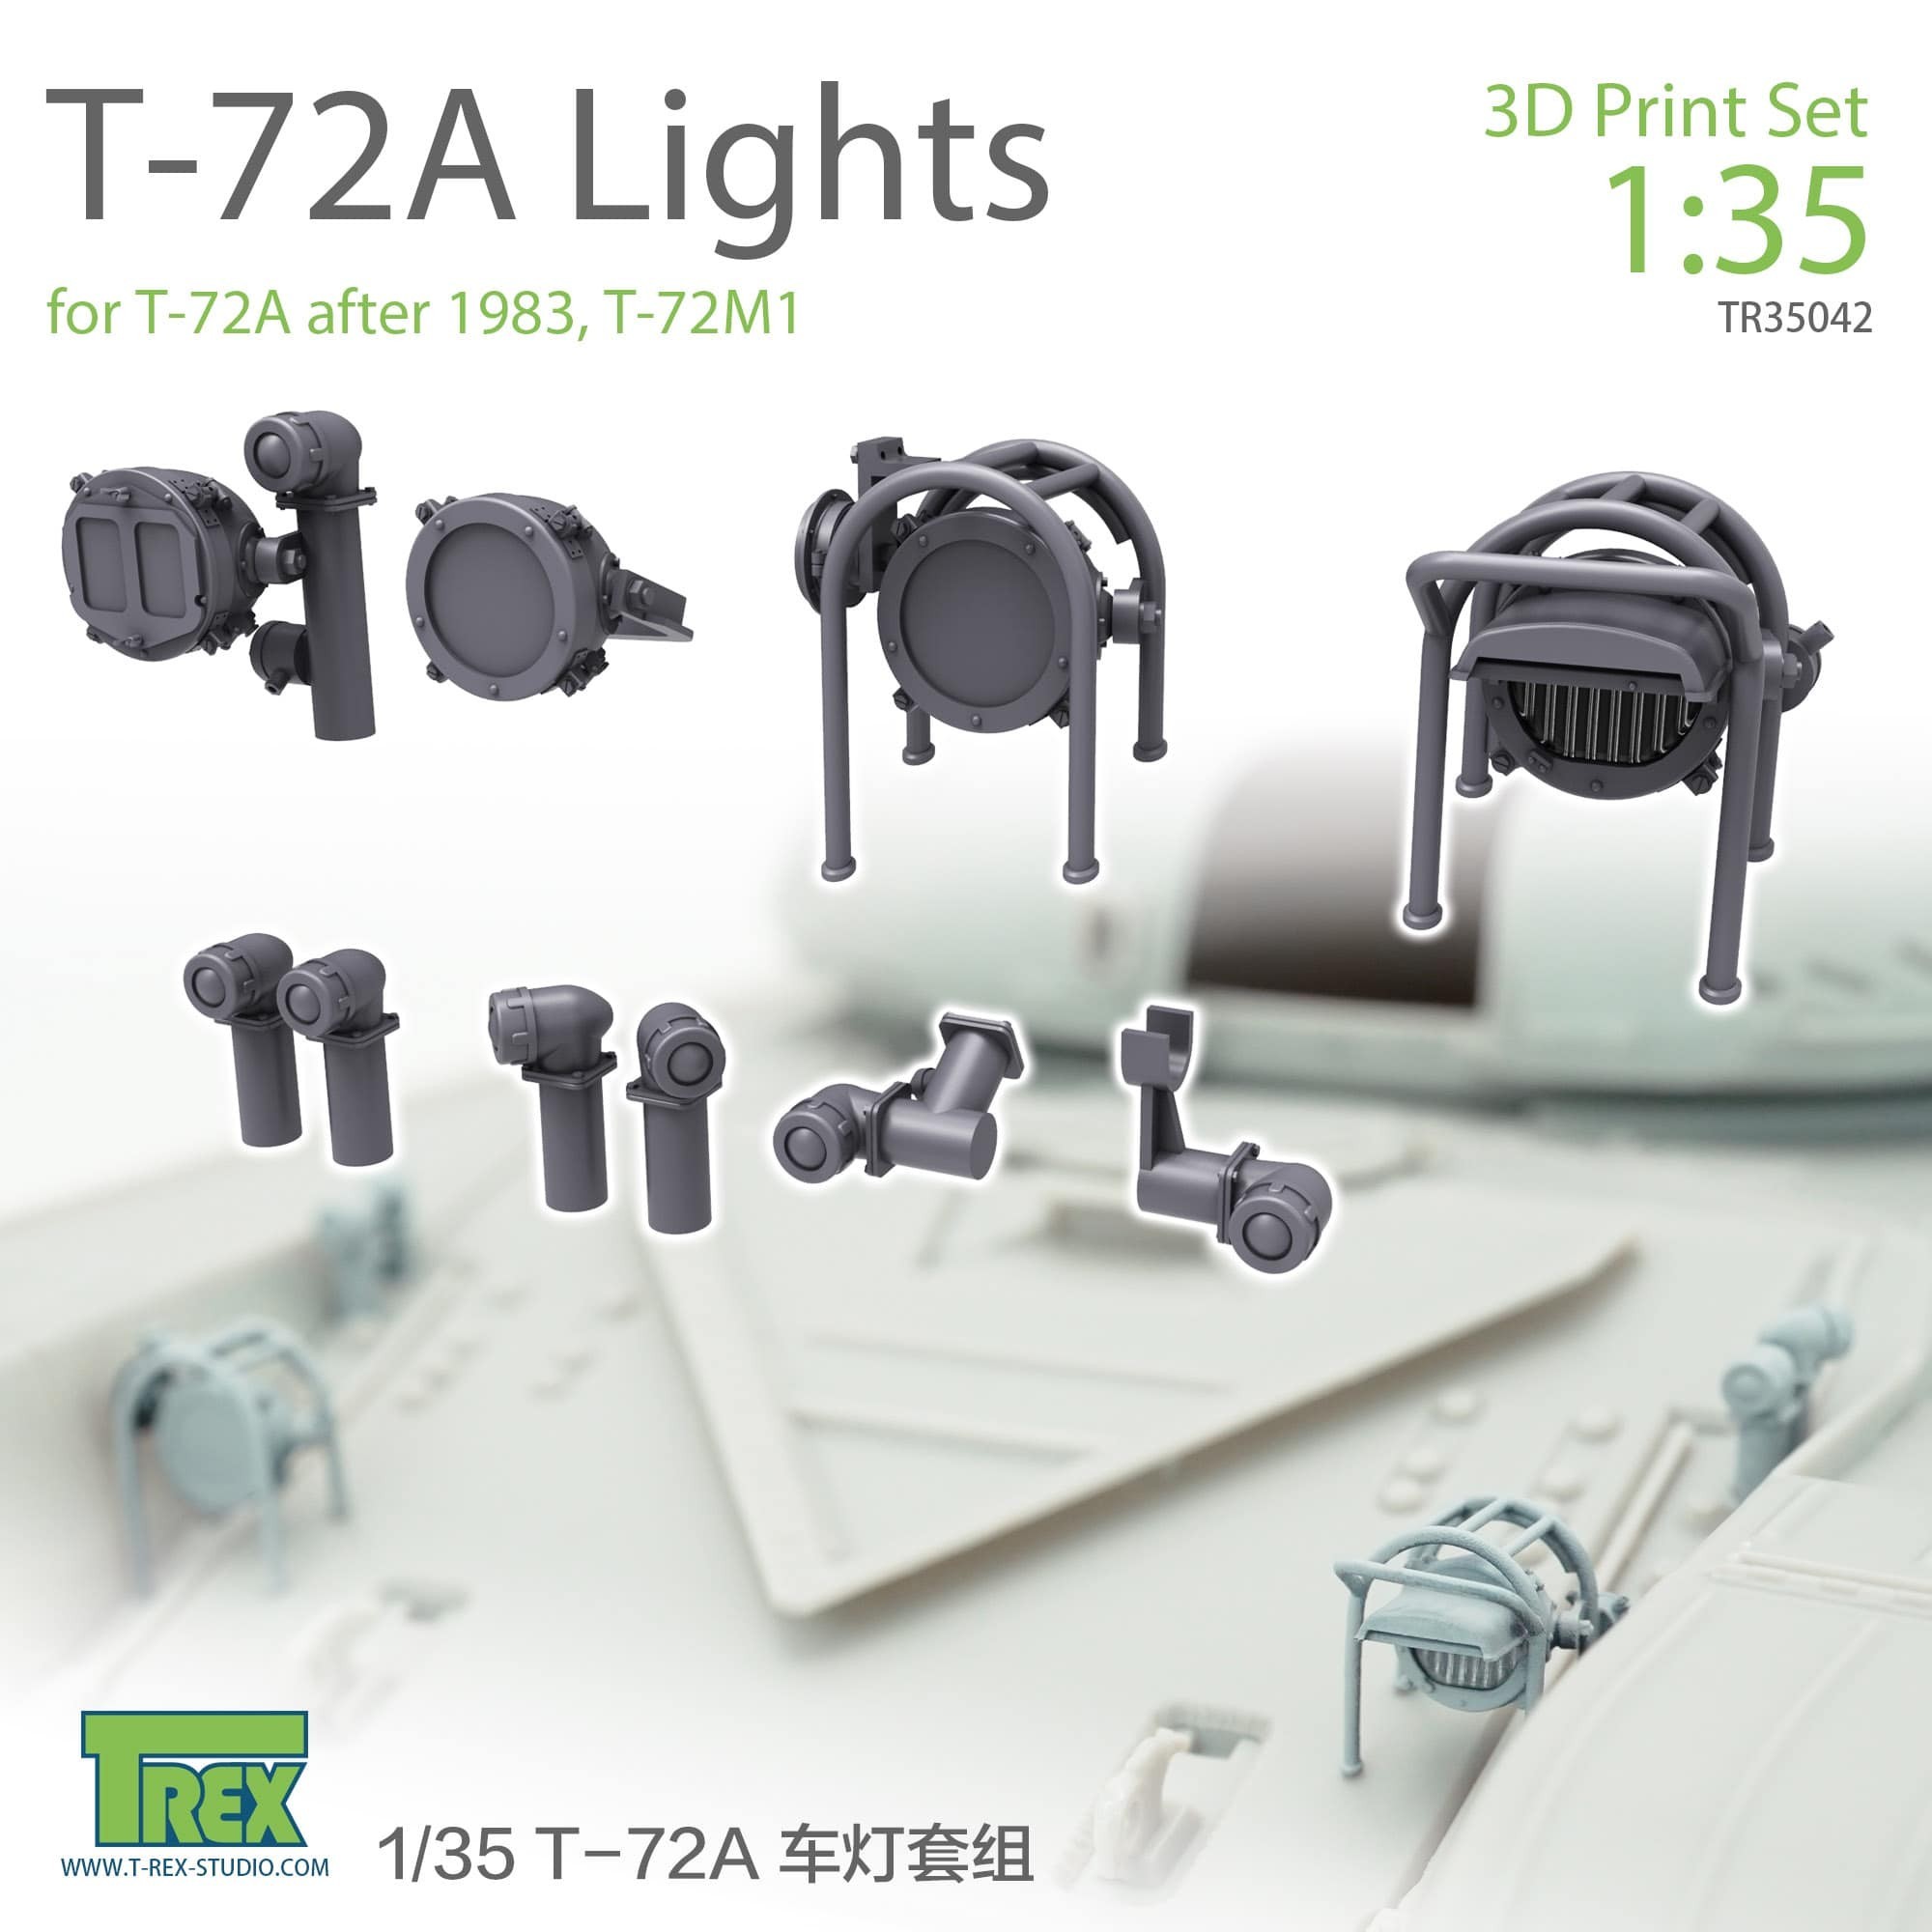 #35042 T-72A Lights set